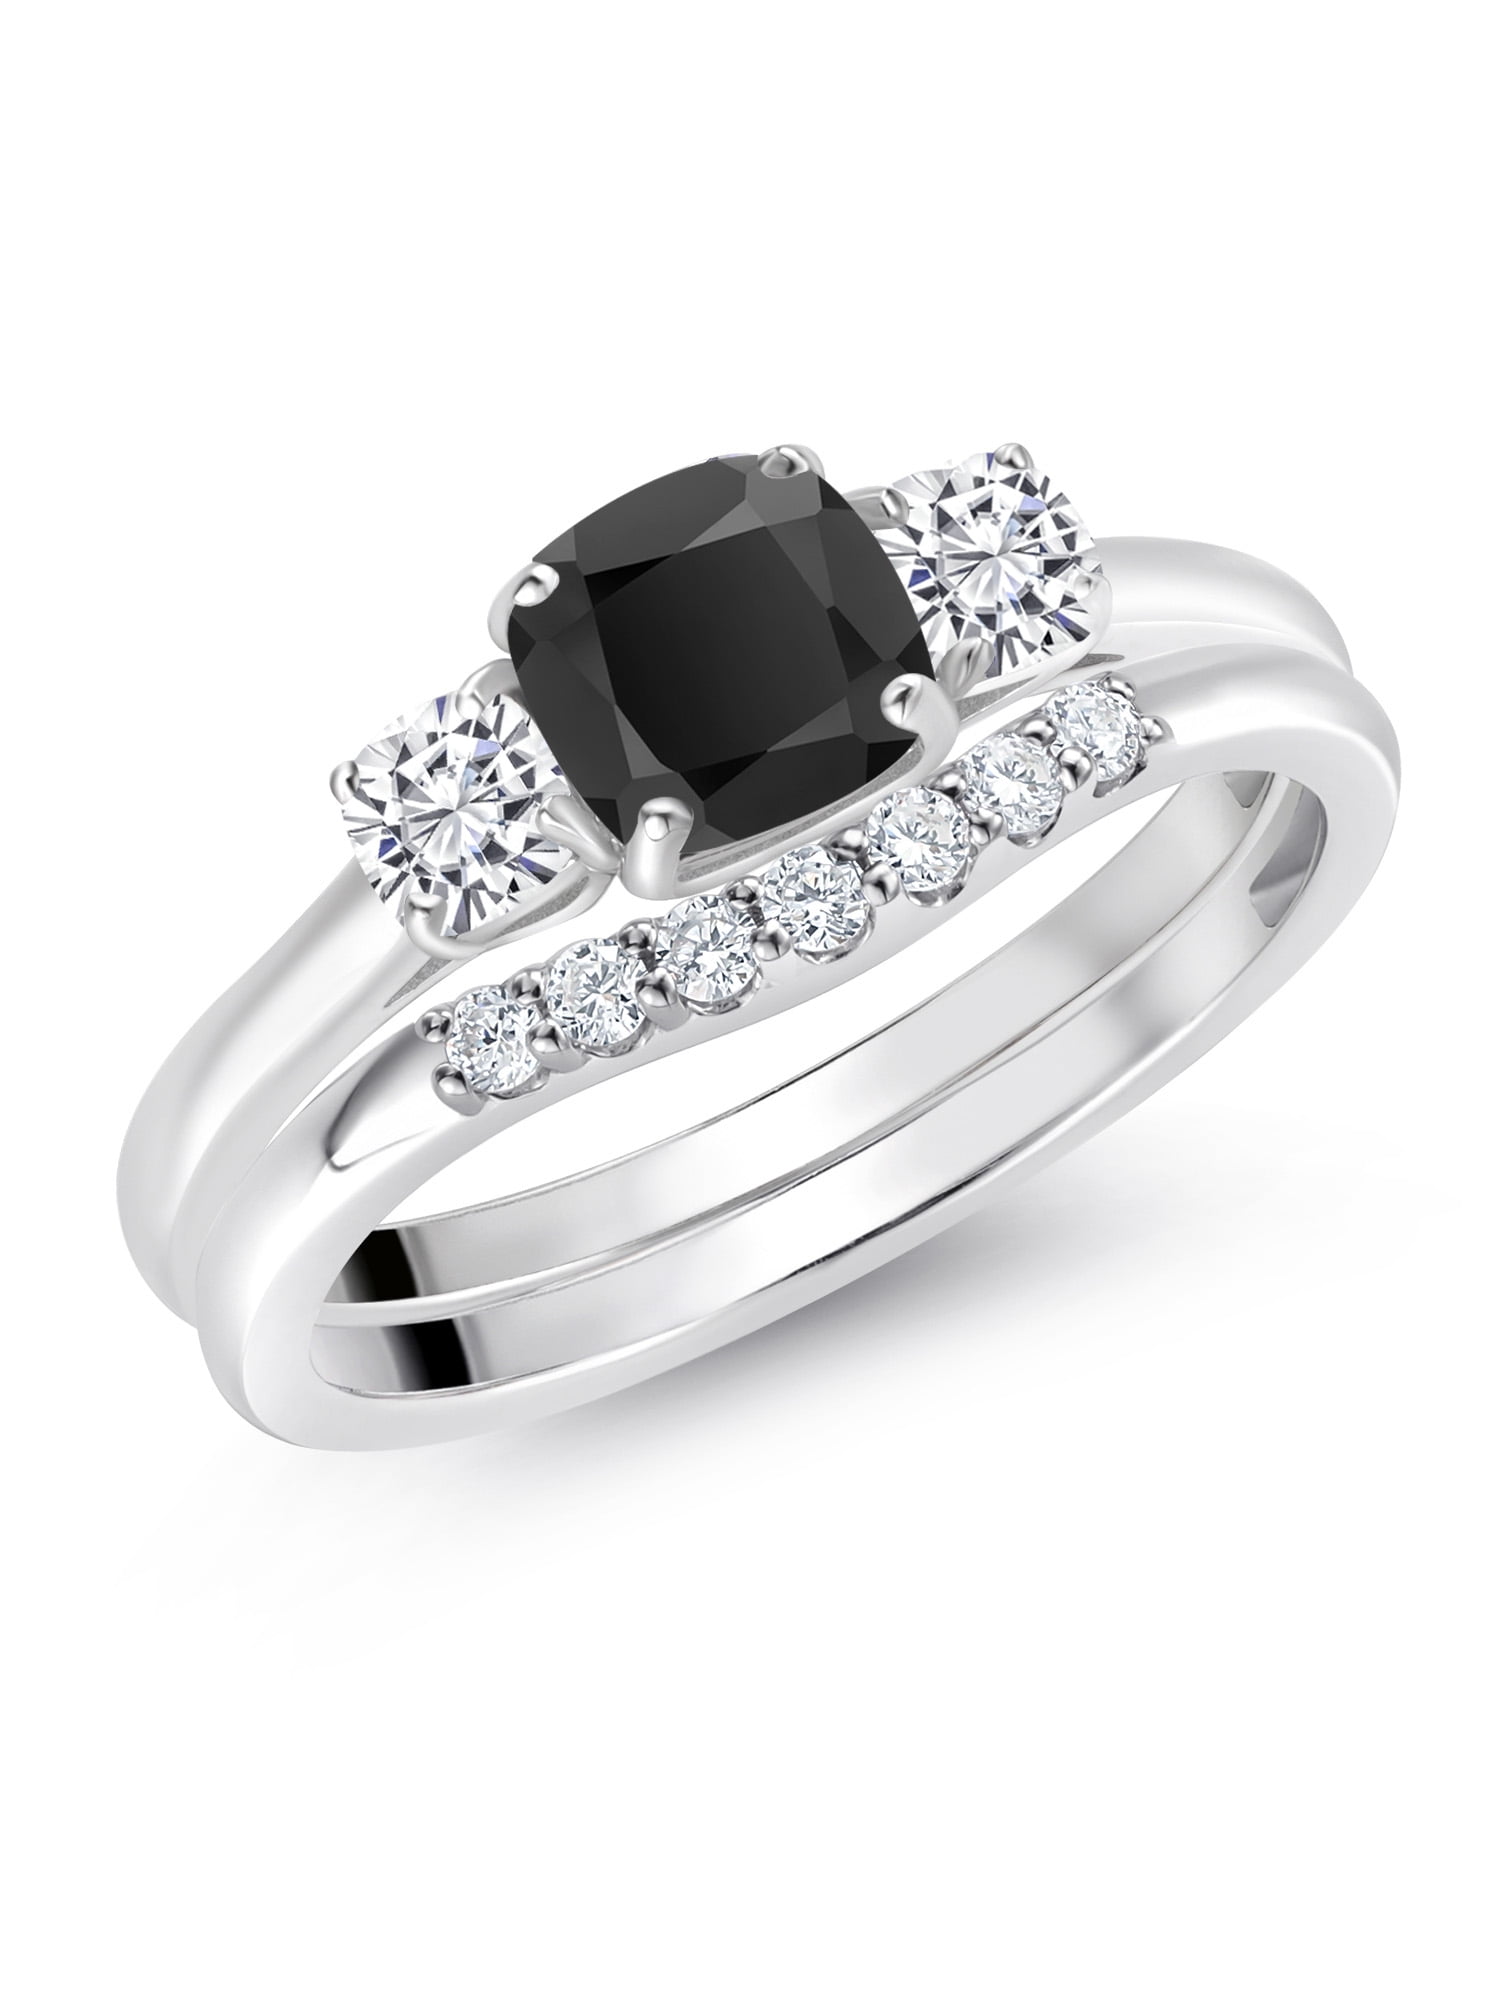 White Gold Black Onyx Men Ring | Rings for men, Black onyx ring, Black  diamond ring engagement